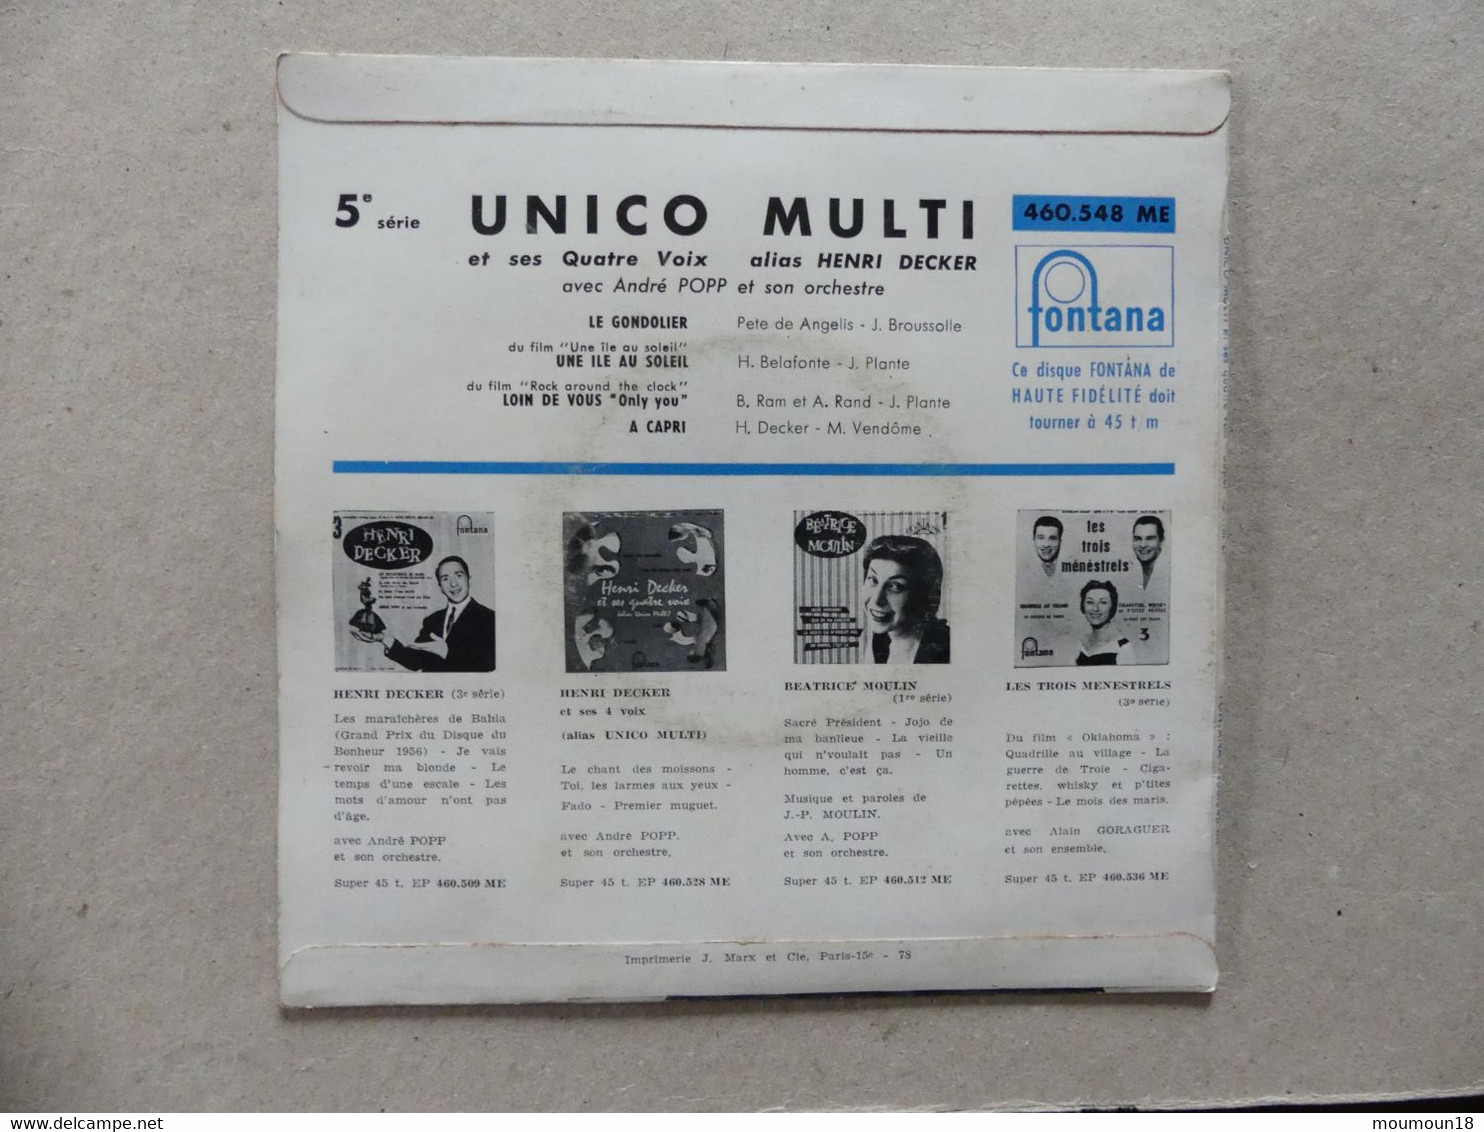 Unico Multi Et Ses Quatre Voix Le Gondolier 460548ME Fontana - 45 T - Maxi-Single